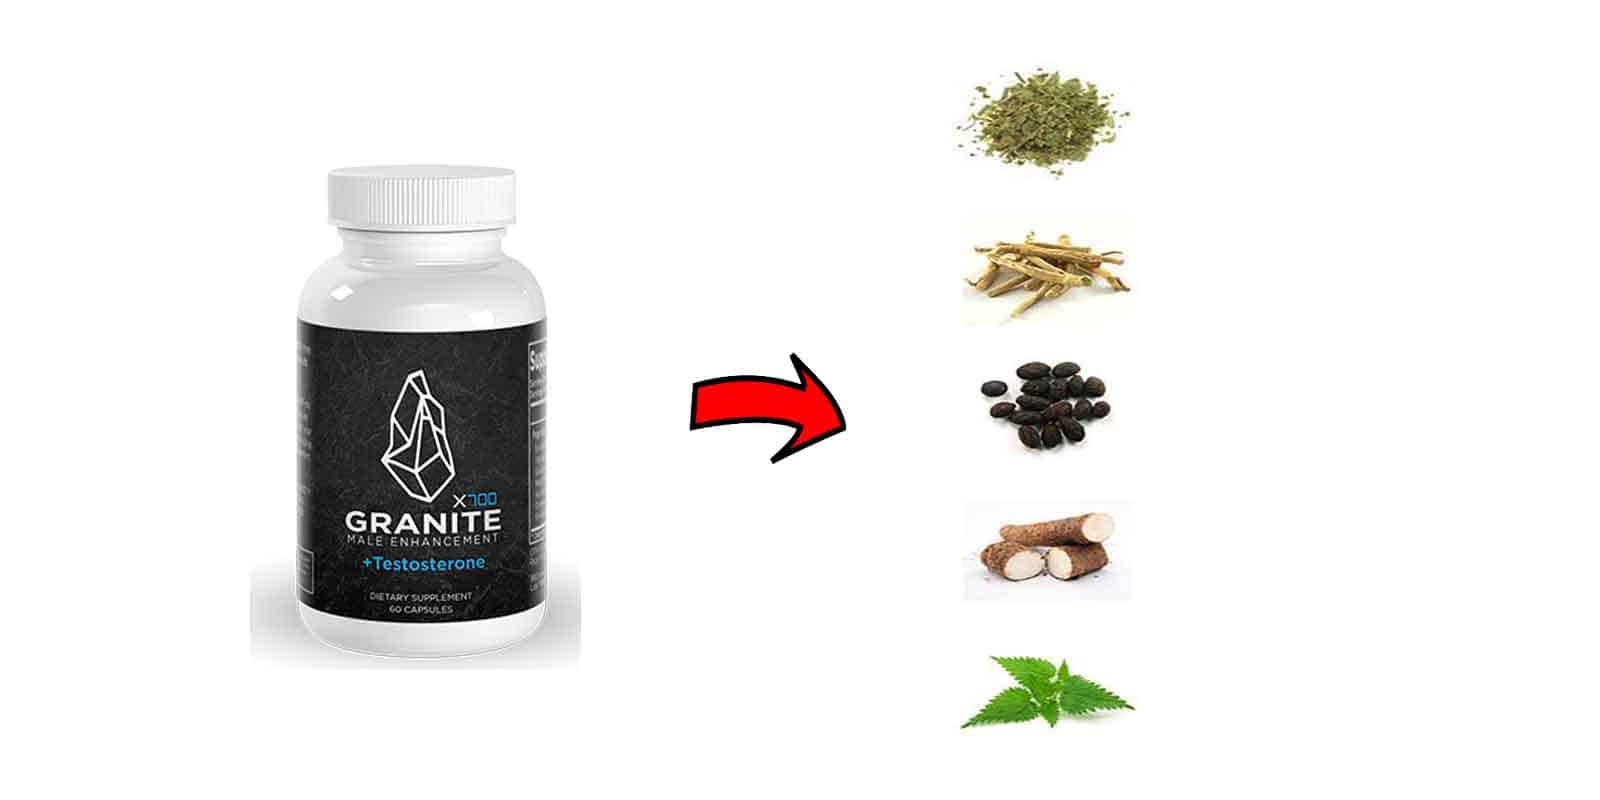 Granite Male Enhancement Ingredients